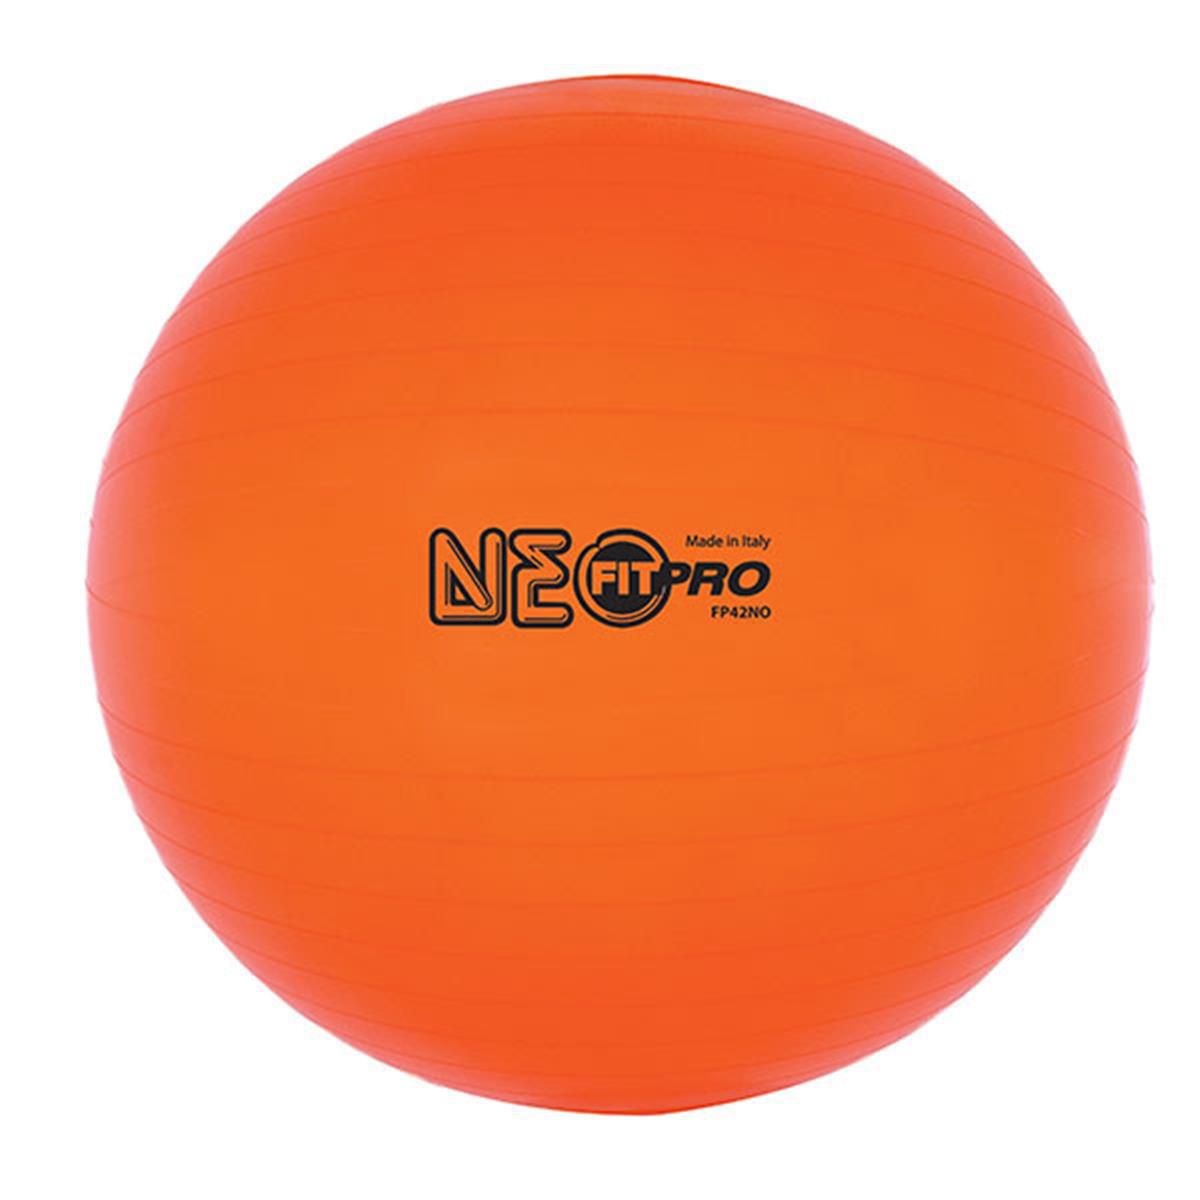 Мяч для тренировок и упражнений Champion Sports FP42NO, 42 см, неоновый оранжевый Champion Sports